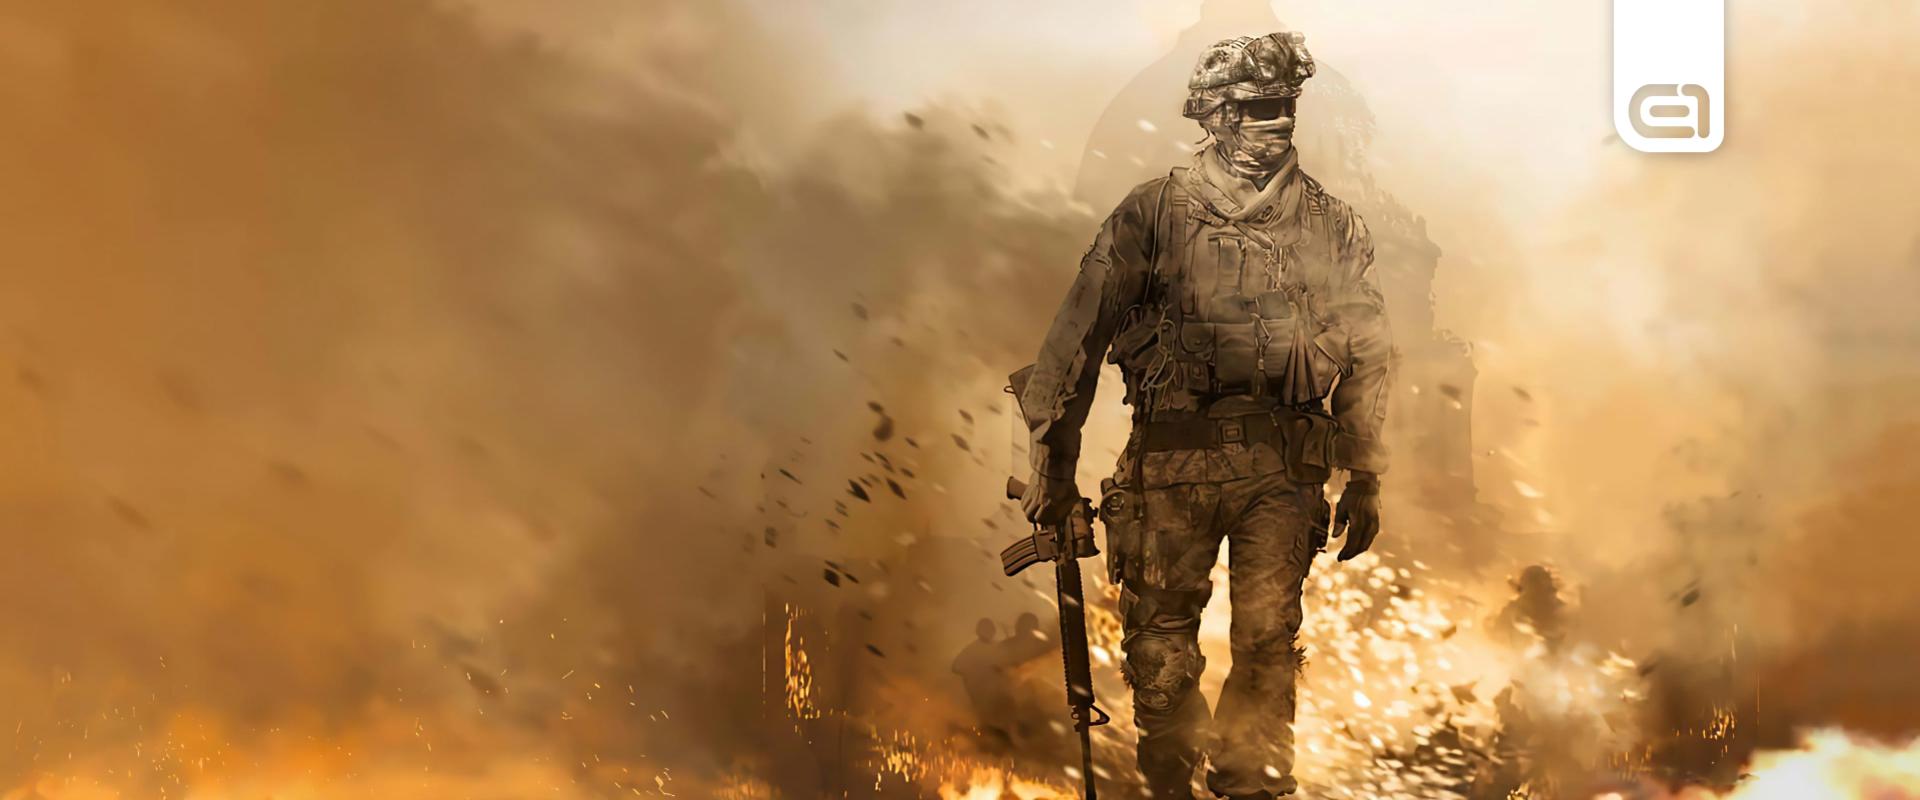 Call of Duty: Ha azt hitted egy olcsó update lesz az MW3, hát van egy rossz hírünk